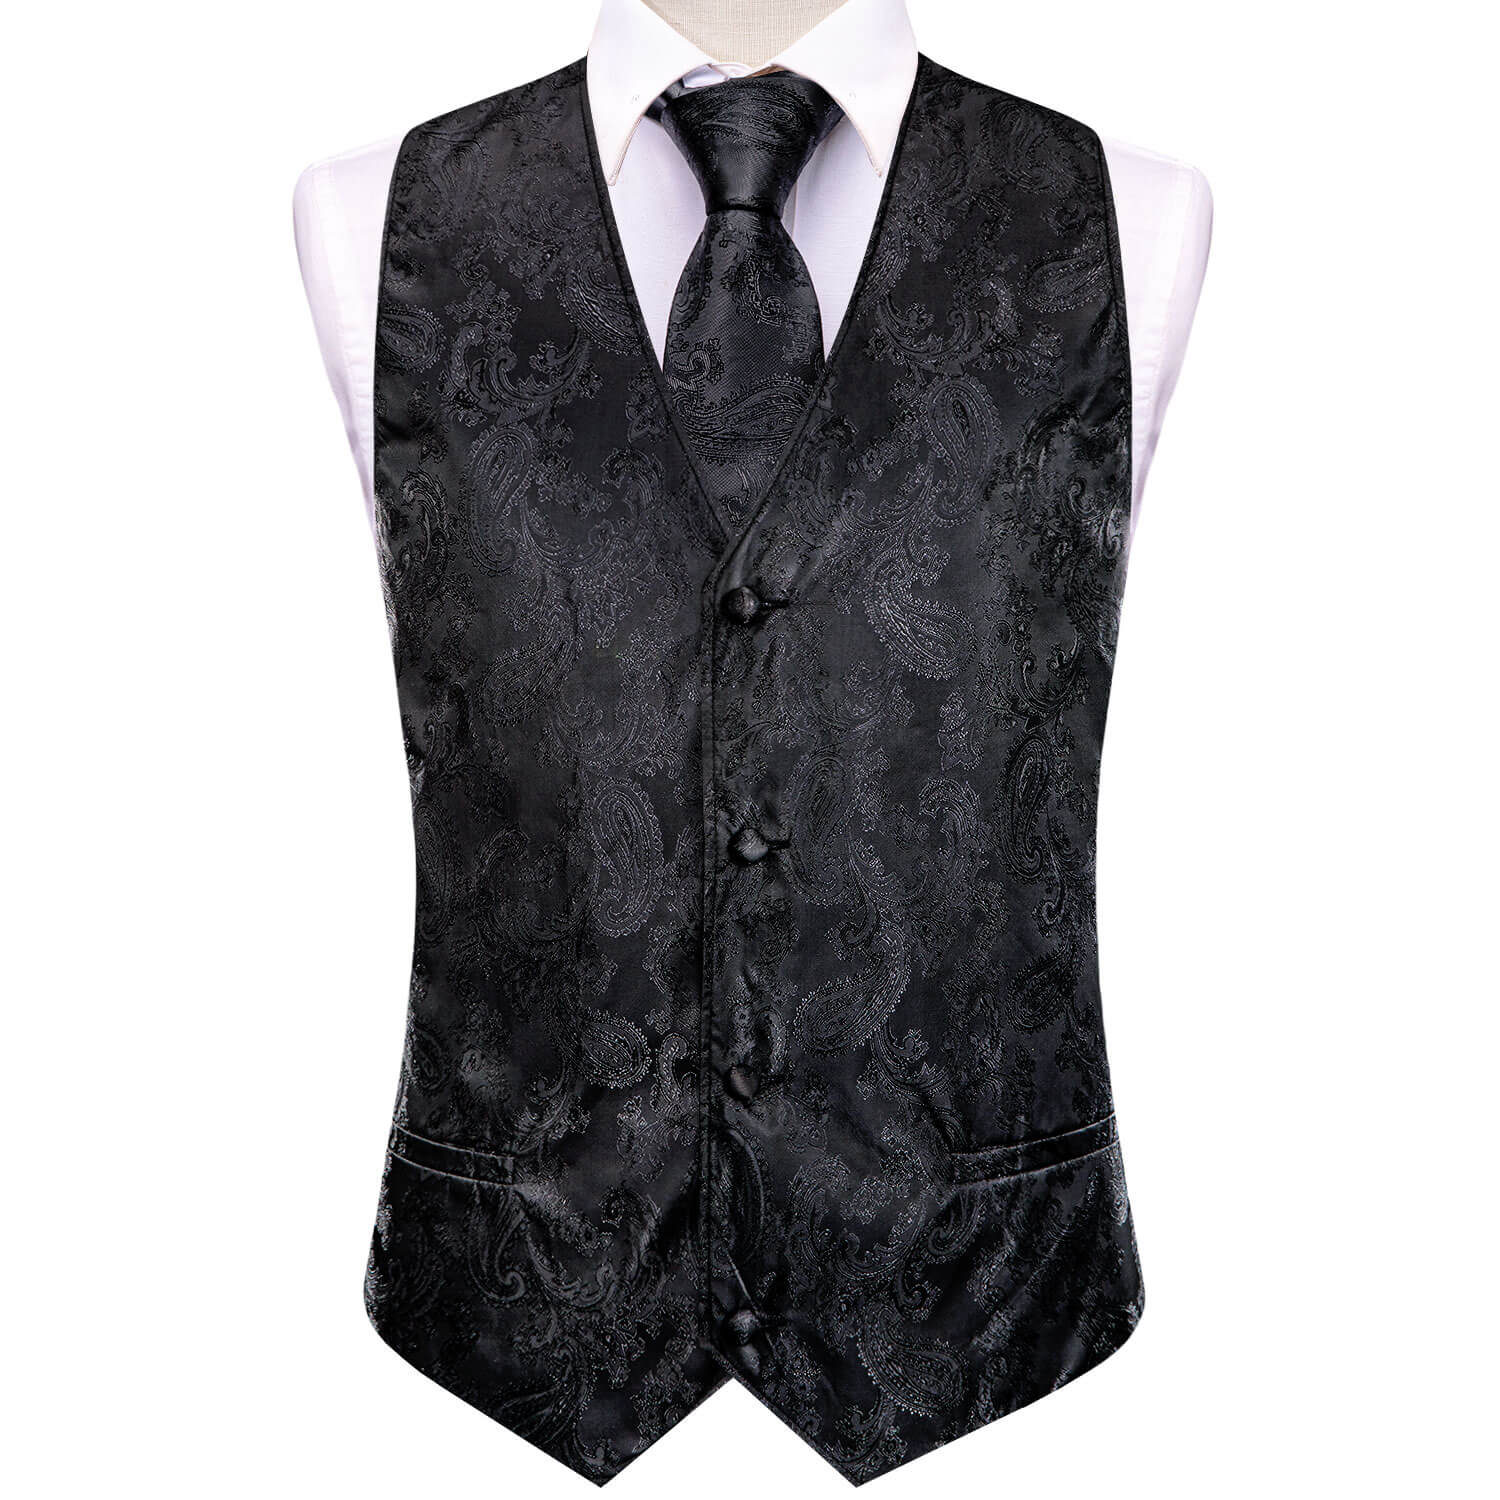  Black Jacquard Paisley Mens Vest and Tie Set